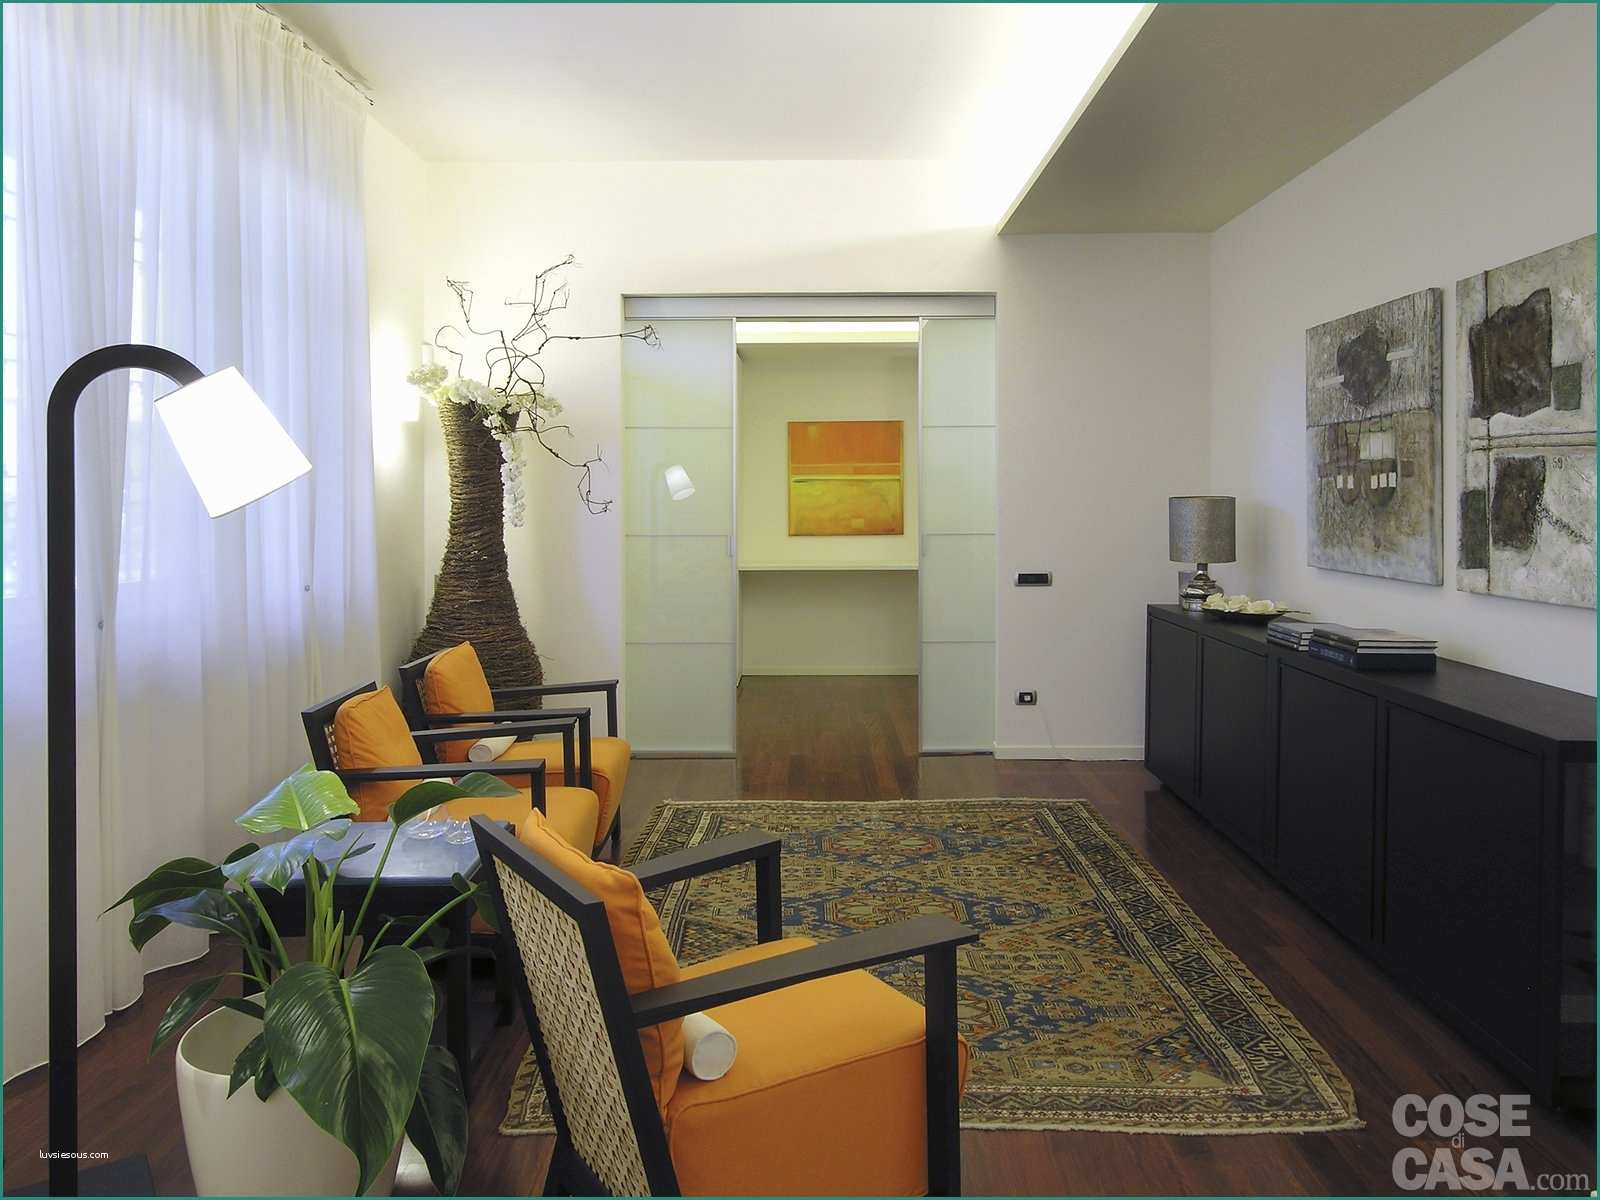 Controsoffittature Moderne Idee E Bordo Tra soffitto E Parete Affordable Salotto Con Pareti Arancio E